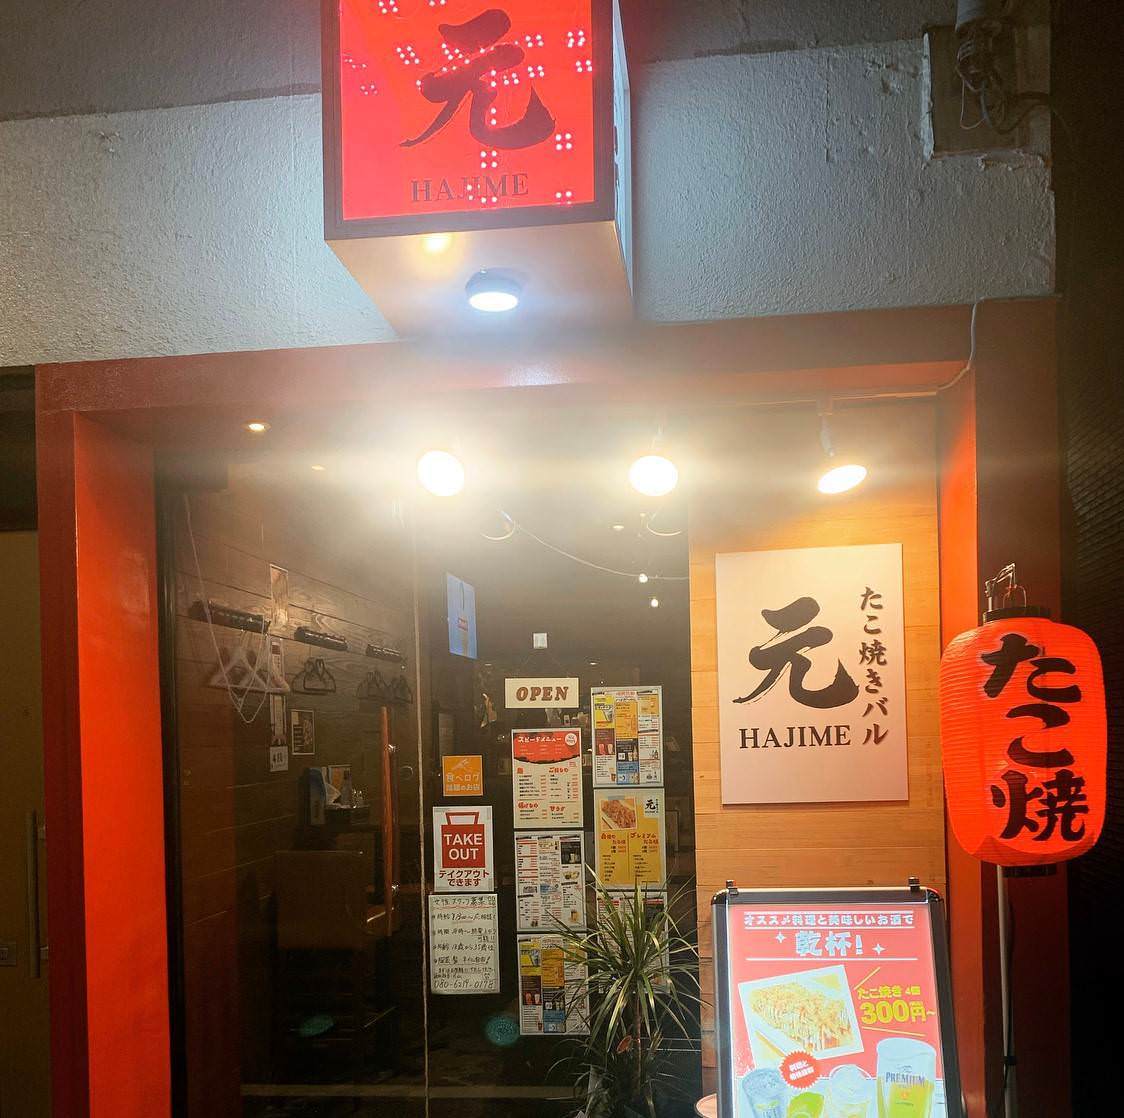 21年 最新グルメ 上野にあるたこ焼きがおすすめの居酒屋 レストラン カフェ 居酒屋のネット予約 東京版